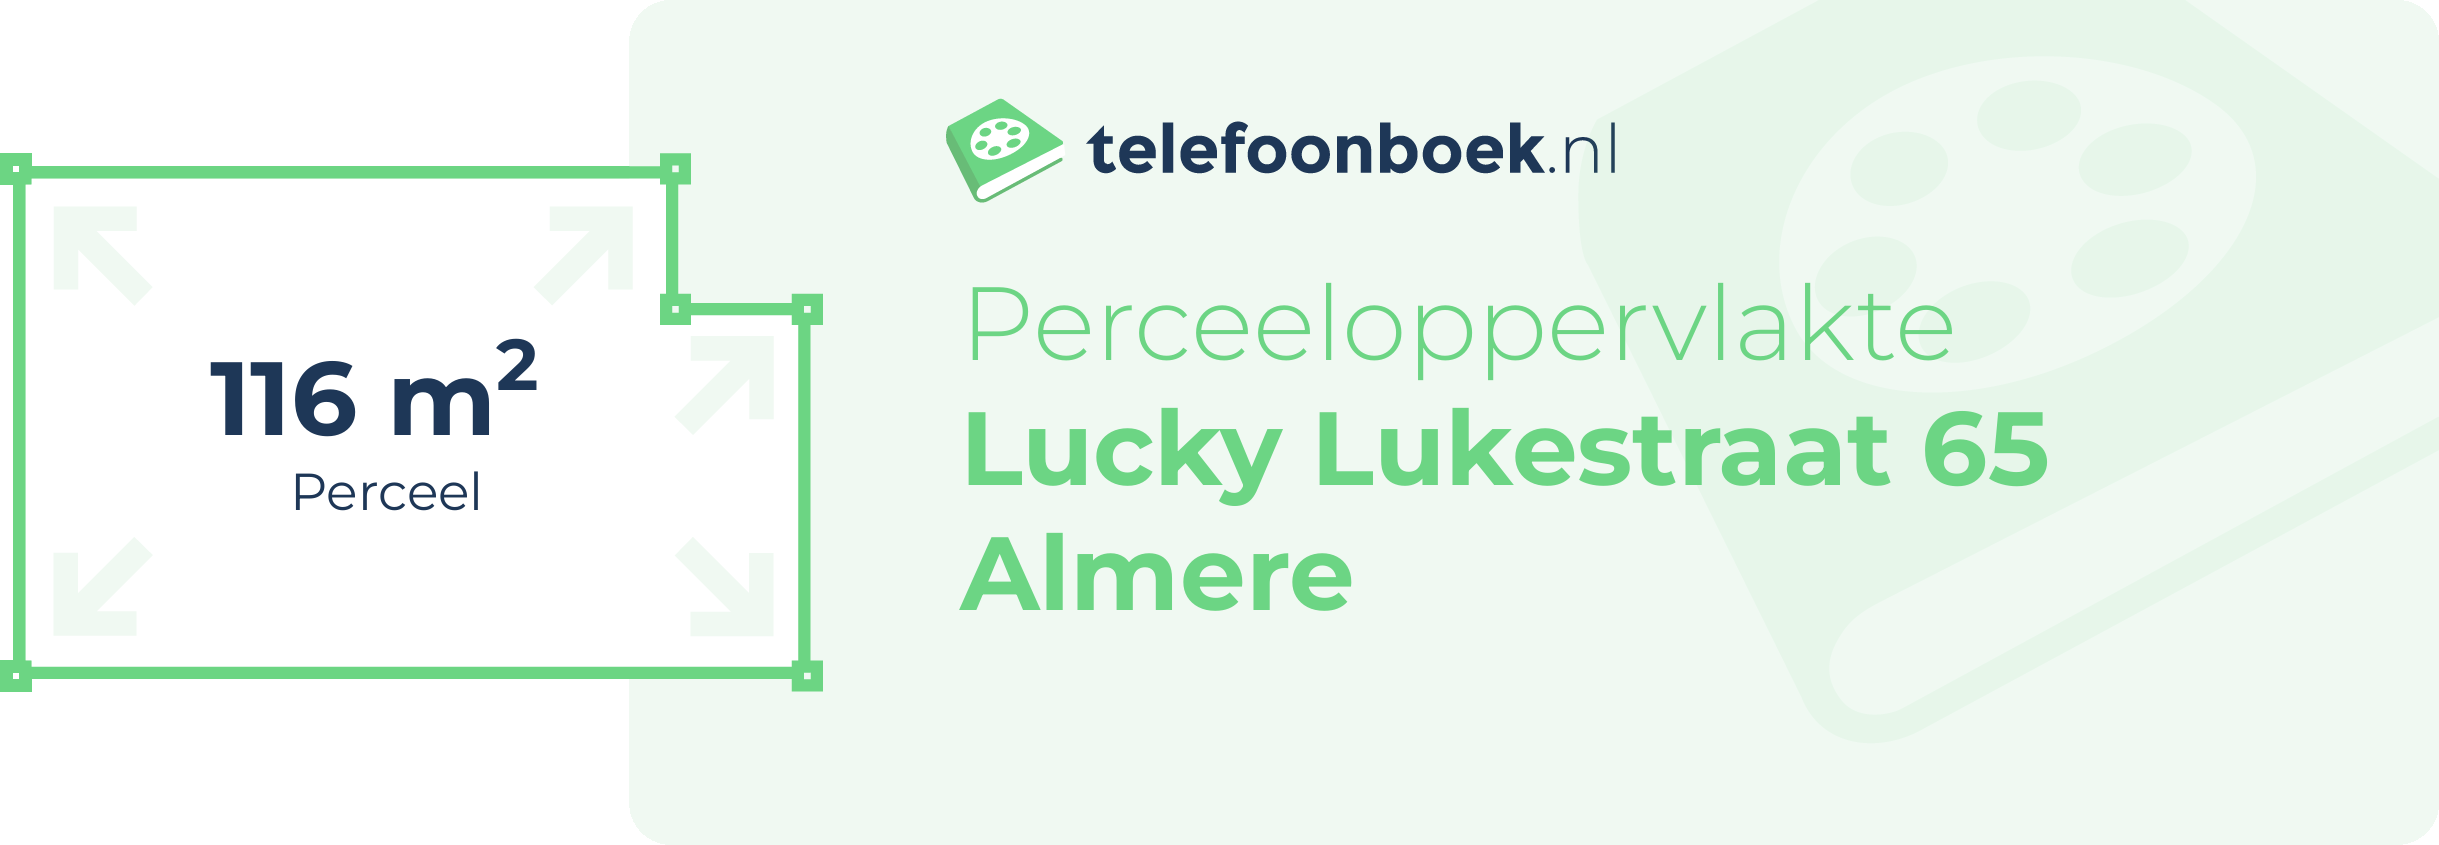 Perceeloppervlakte Lucky Lukestraat 65 Almere